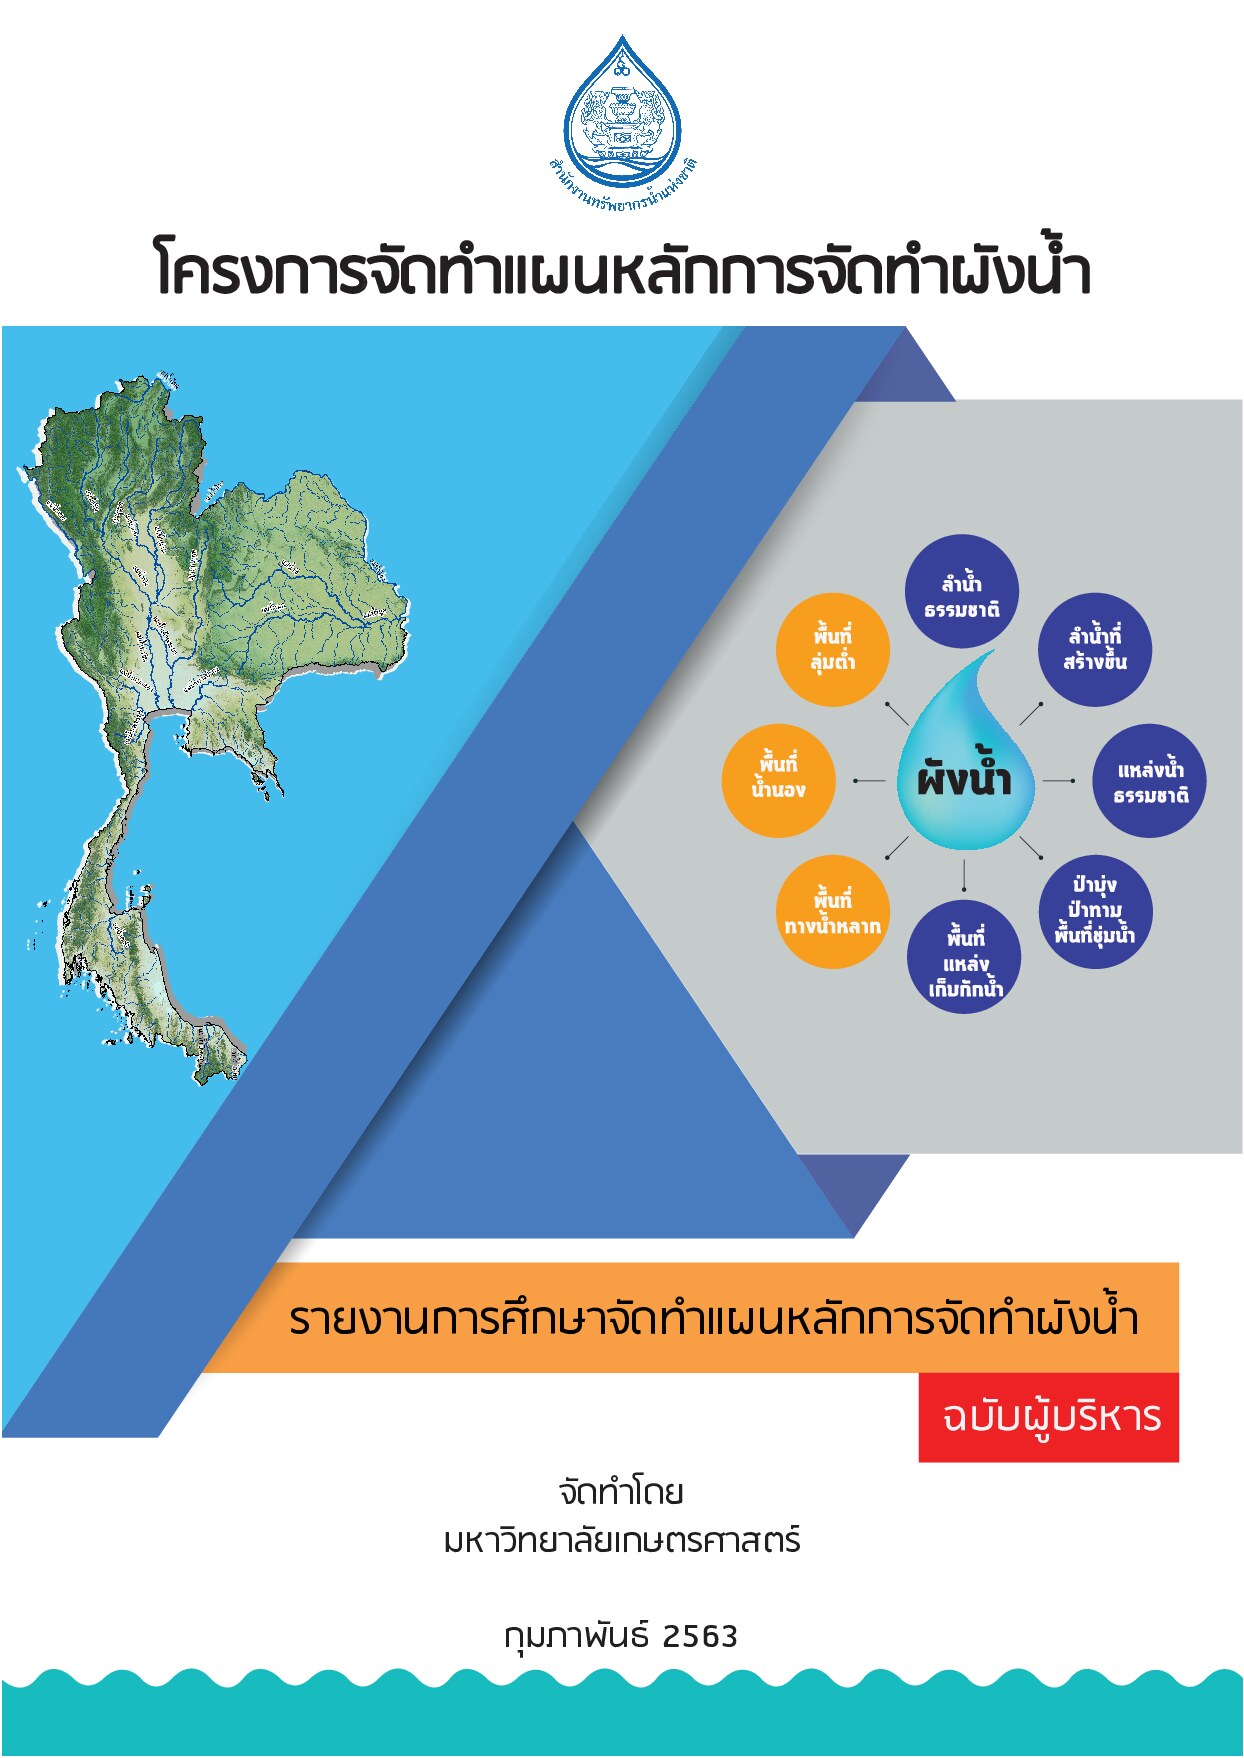 เล่มที่ 2 รายงานสรุปสำหรับผู้บริหาร (ฉบับภาษาไทย) โครงการจัดทำแผนหลักการจัดทำผังน้ำ  สำนักงานทรัพยากรน้ำแห่งชาติ